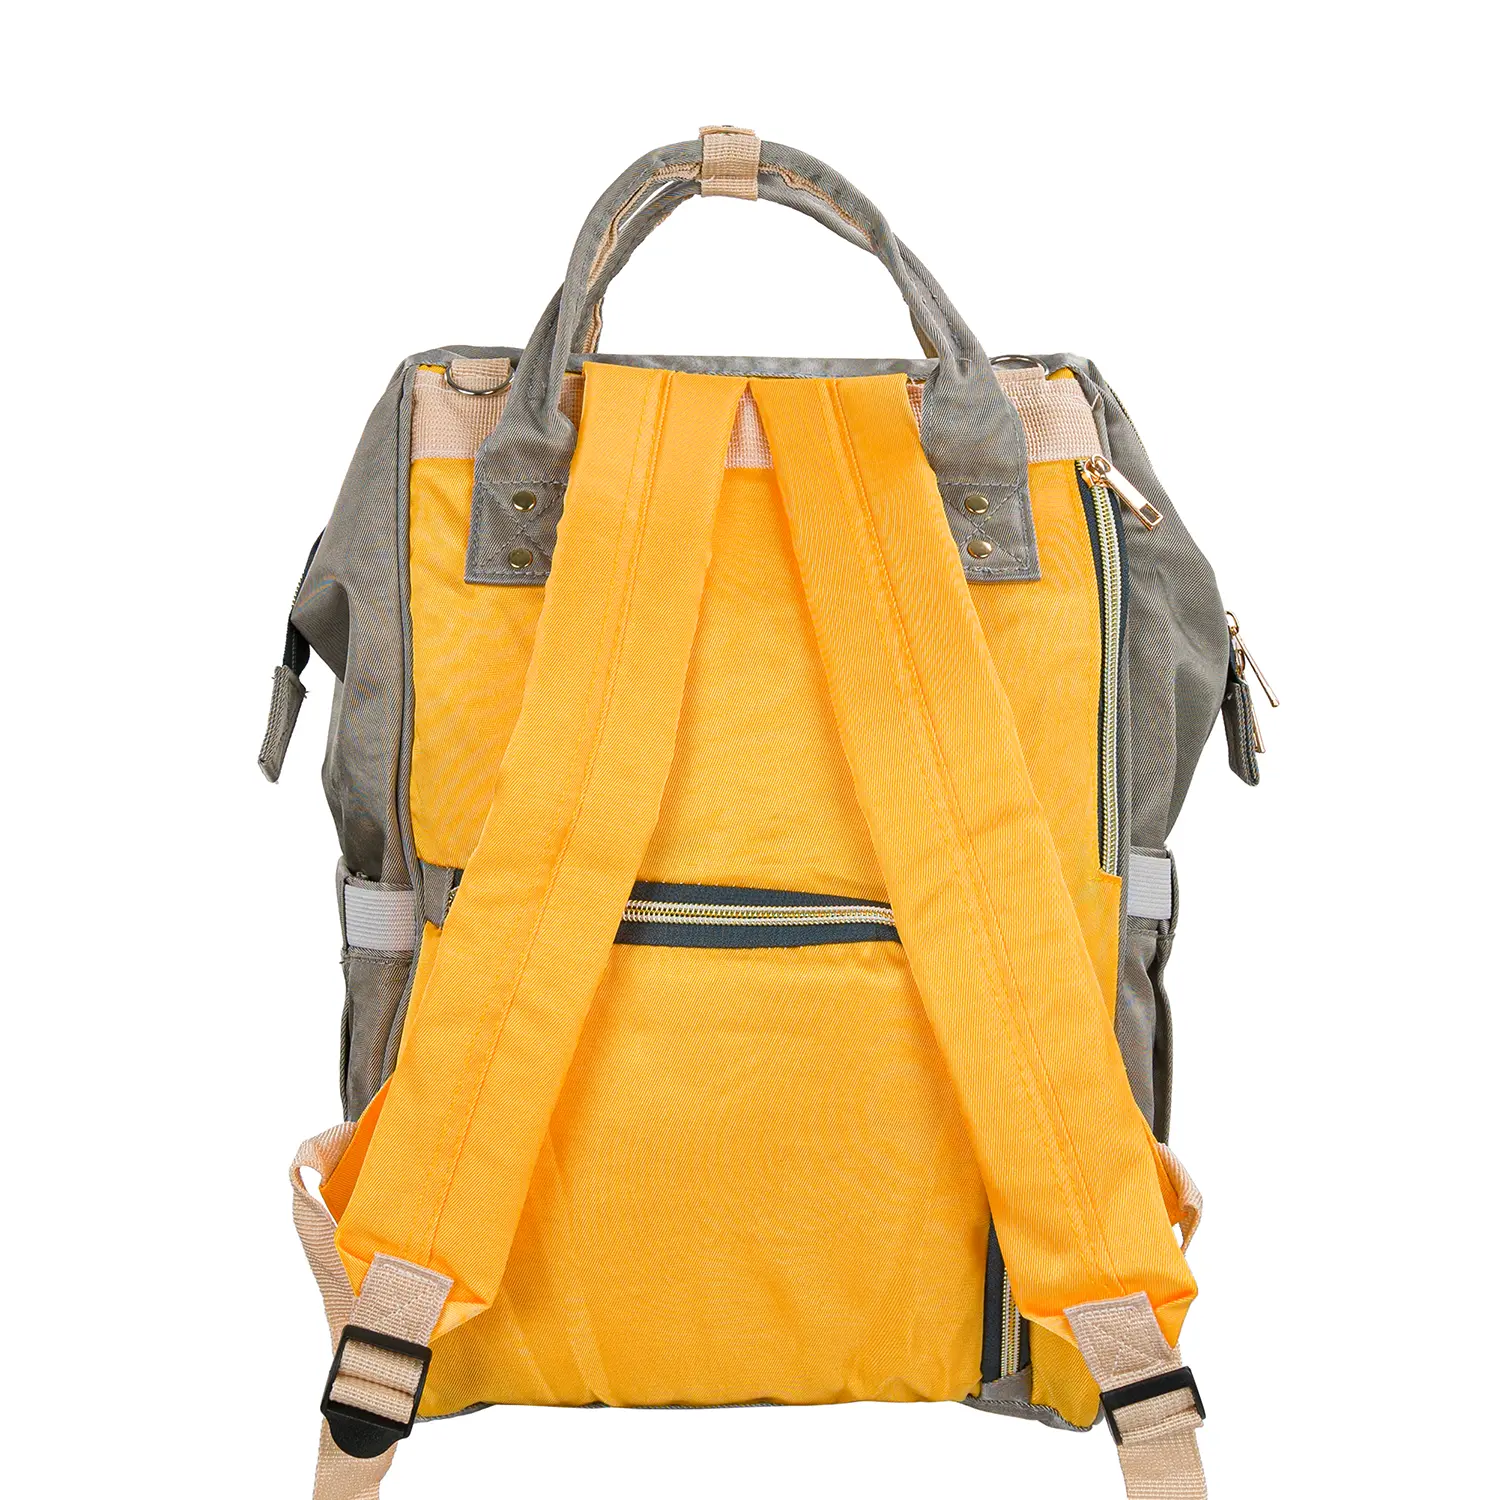 Pelenkázó hátizsák, hátitáska szürke-sárga színben (ST-MB-JA1911-118-GRAY-YELLOW) pelenkázótáska